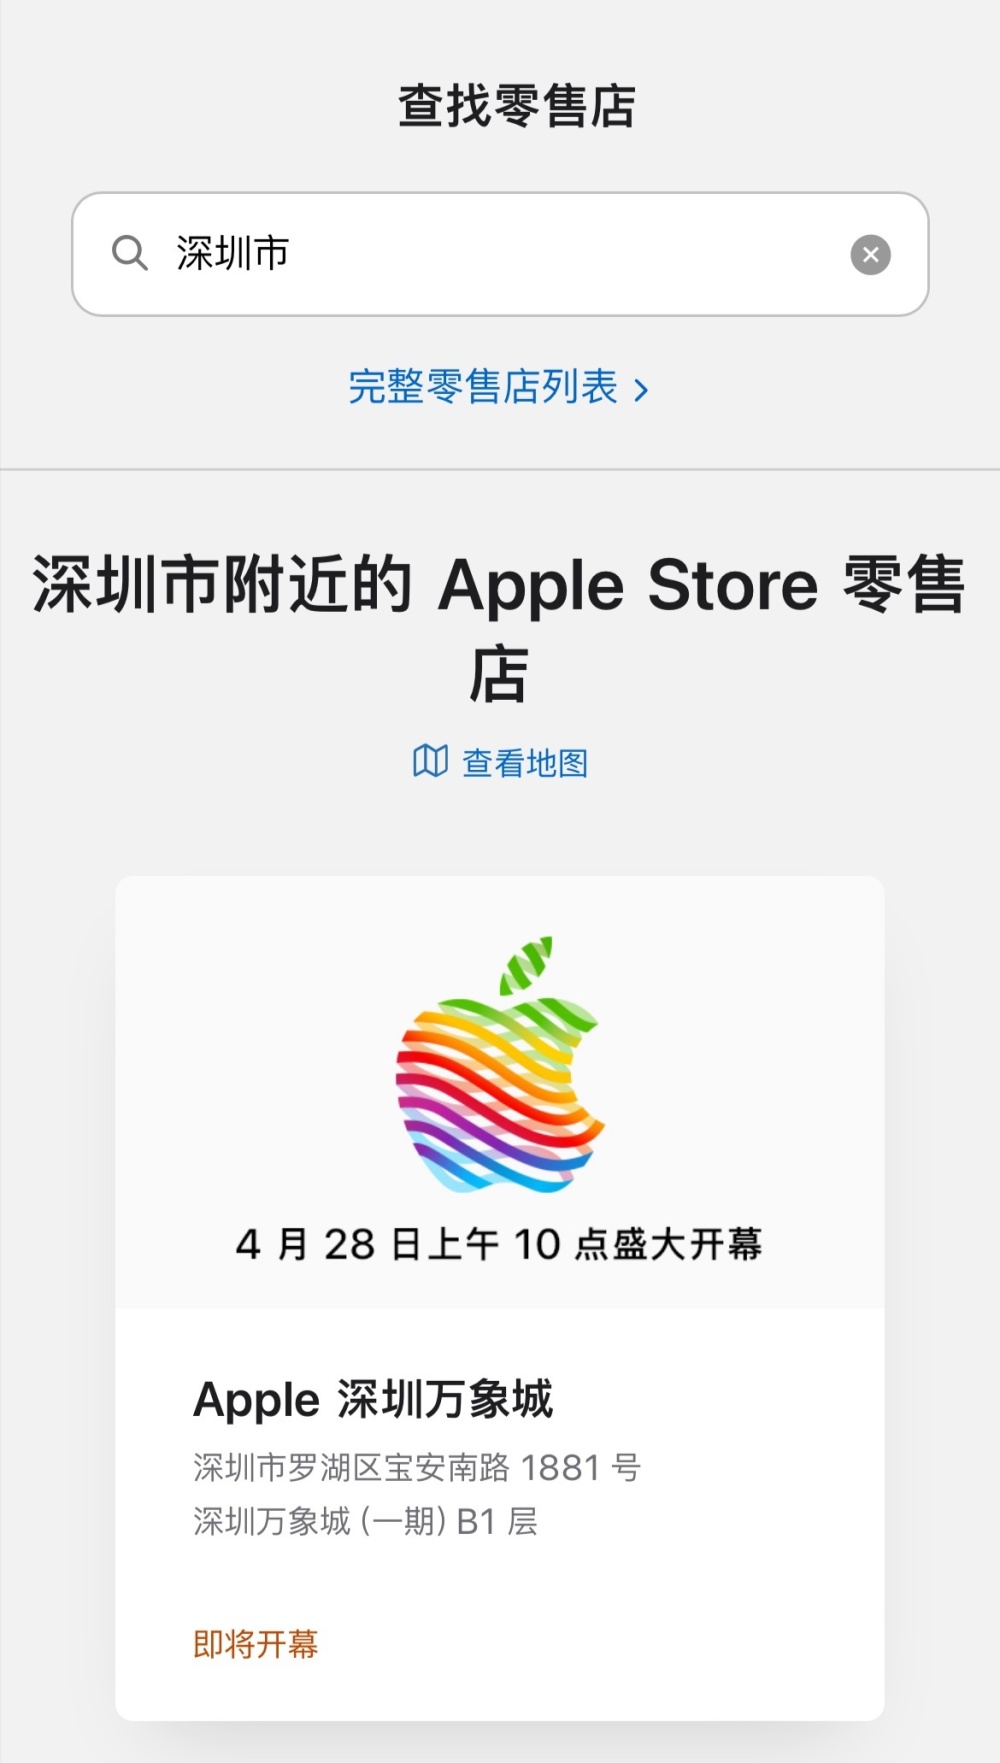 深圳第二家苹果 Apple Store 定于 4月28 日开幕